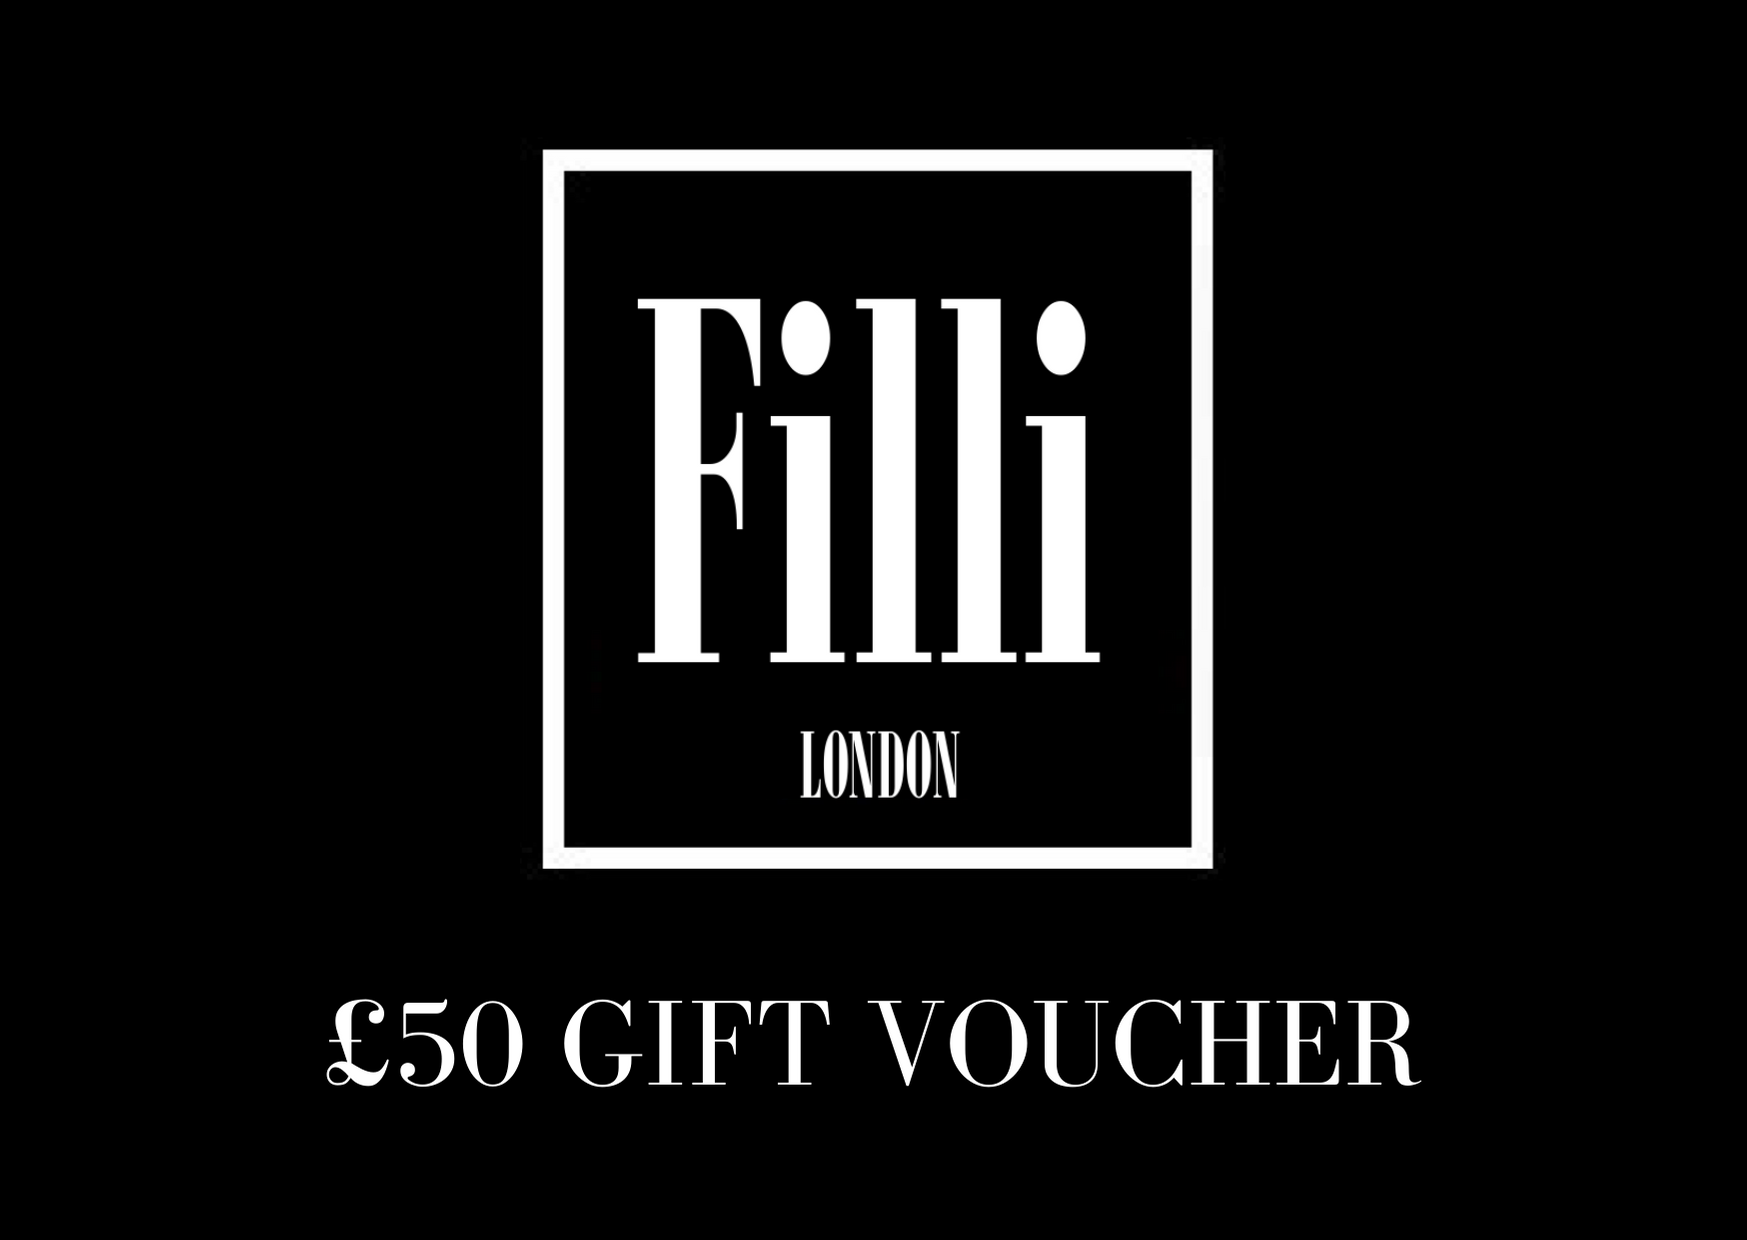 £50 Gift Voucher - Filli London